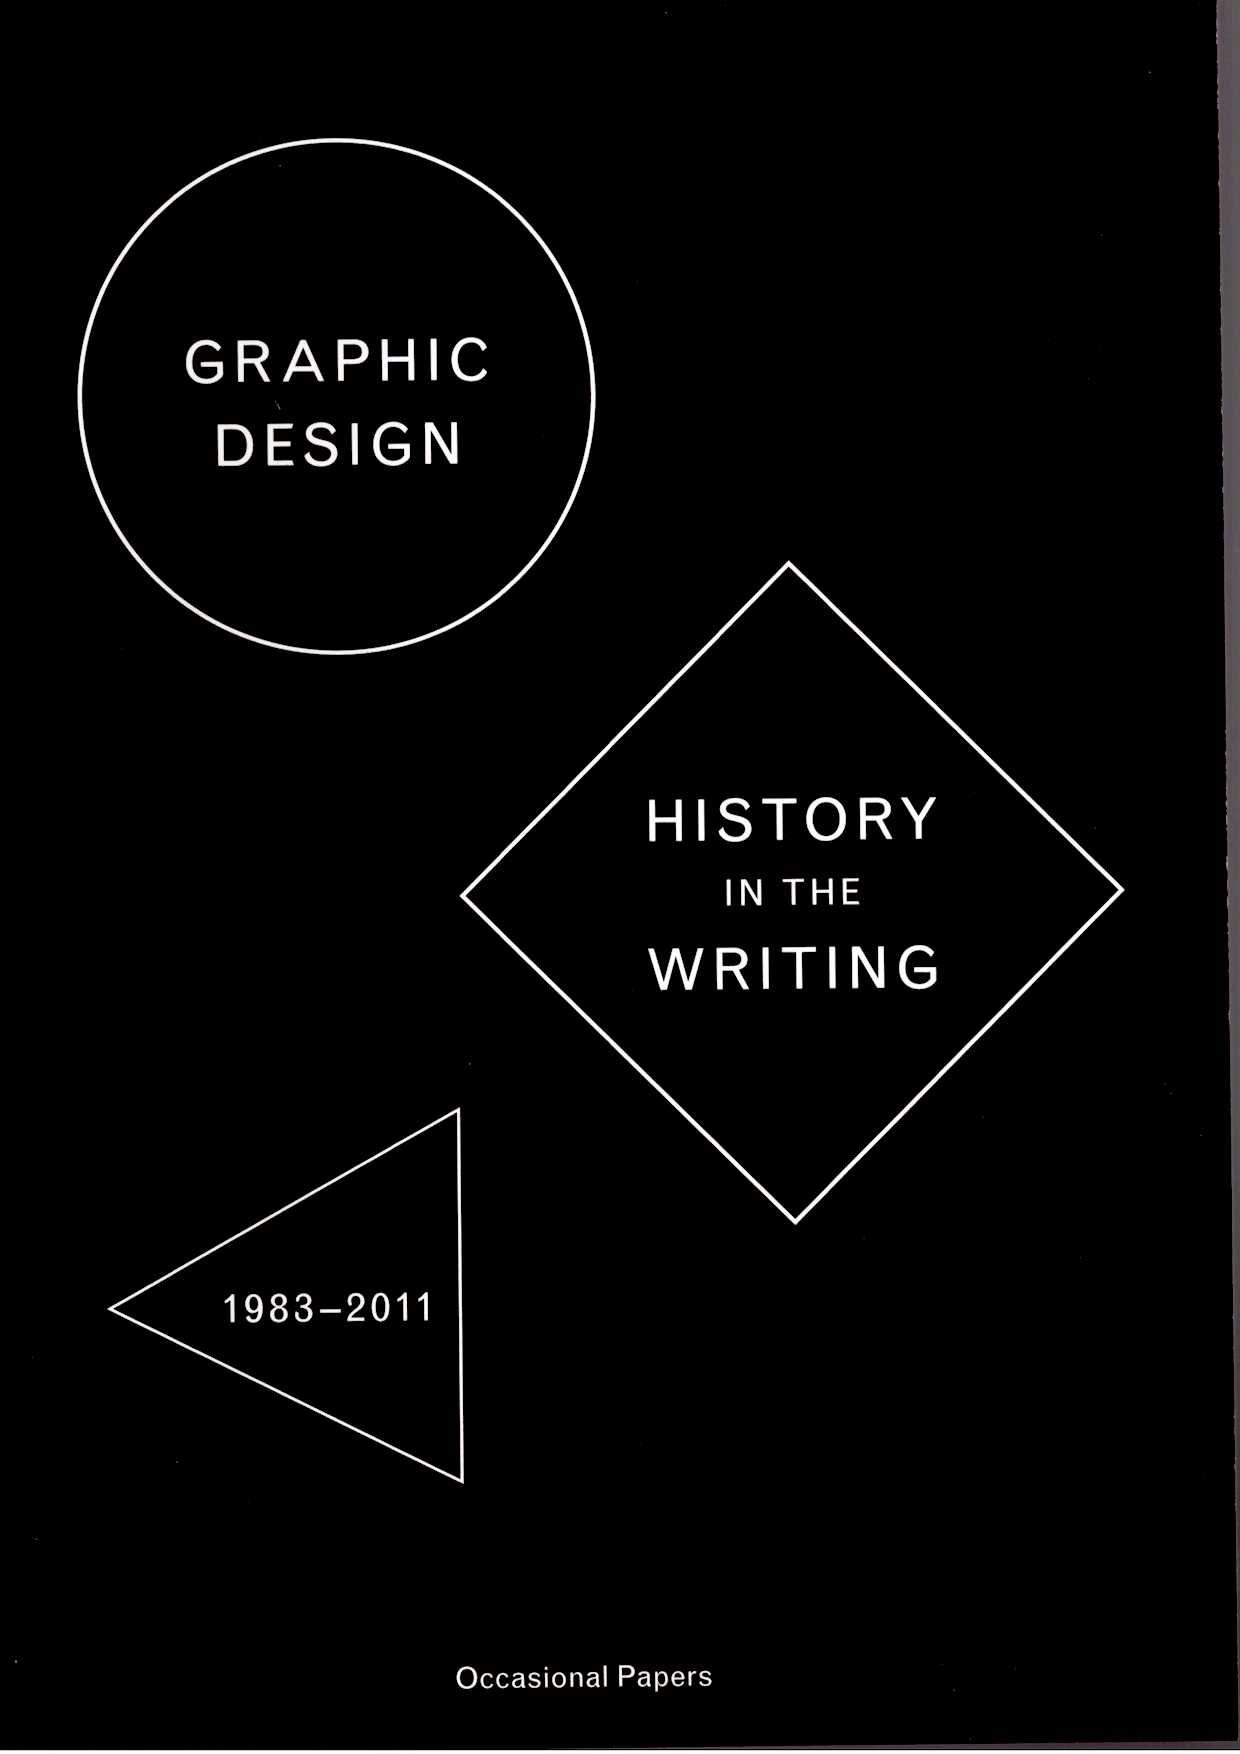 DE SMET, Catherine: DE BONDT, Sara (eds.) - Graphic Design: History in the Writing (1983–2011)